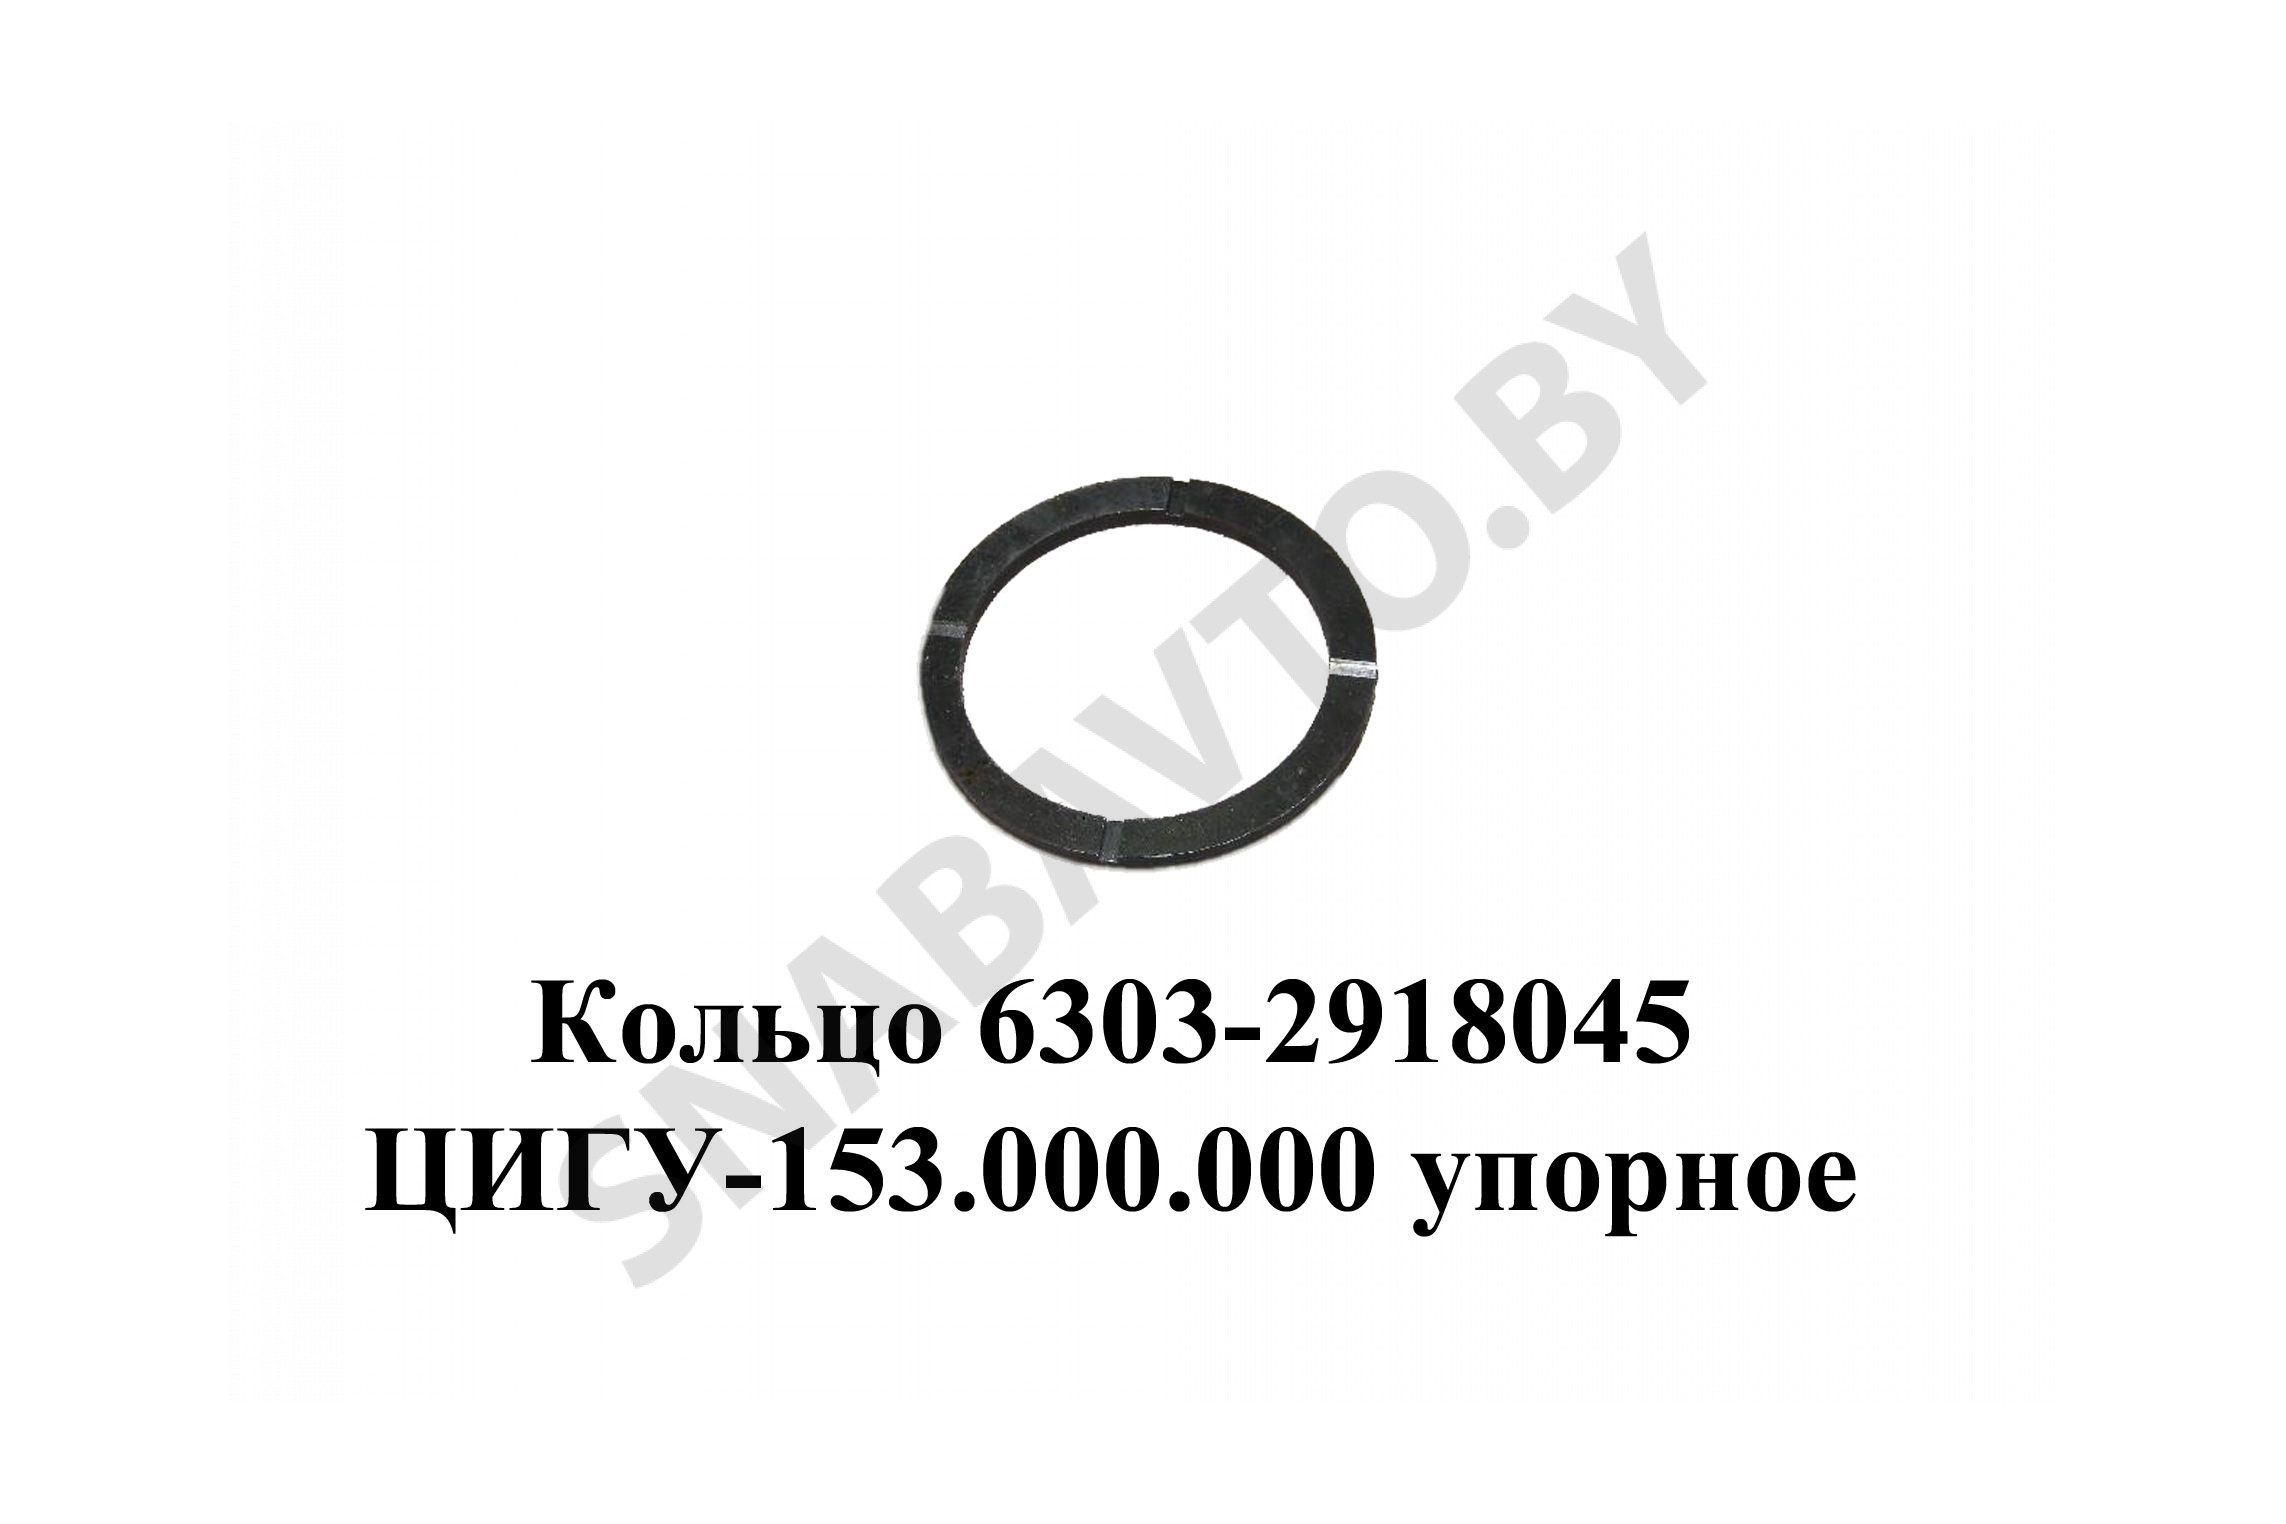 Кольцо  ЦИГУ-153.000.000 упорное балансира с проточкой 6303-2918045, Лайтимет